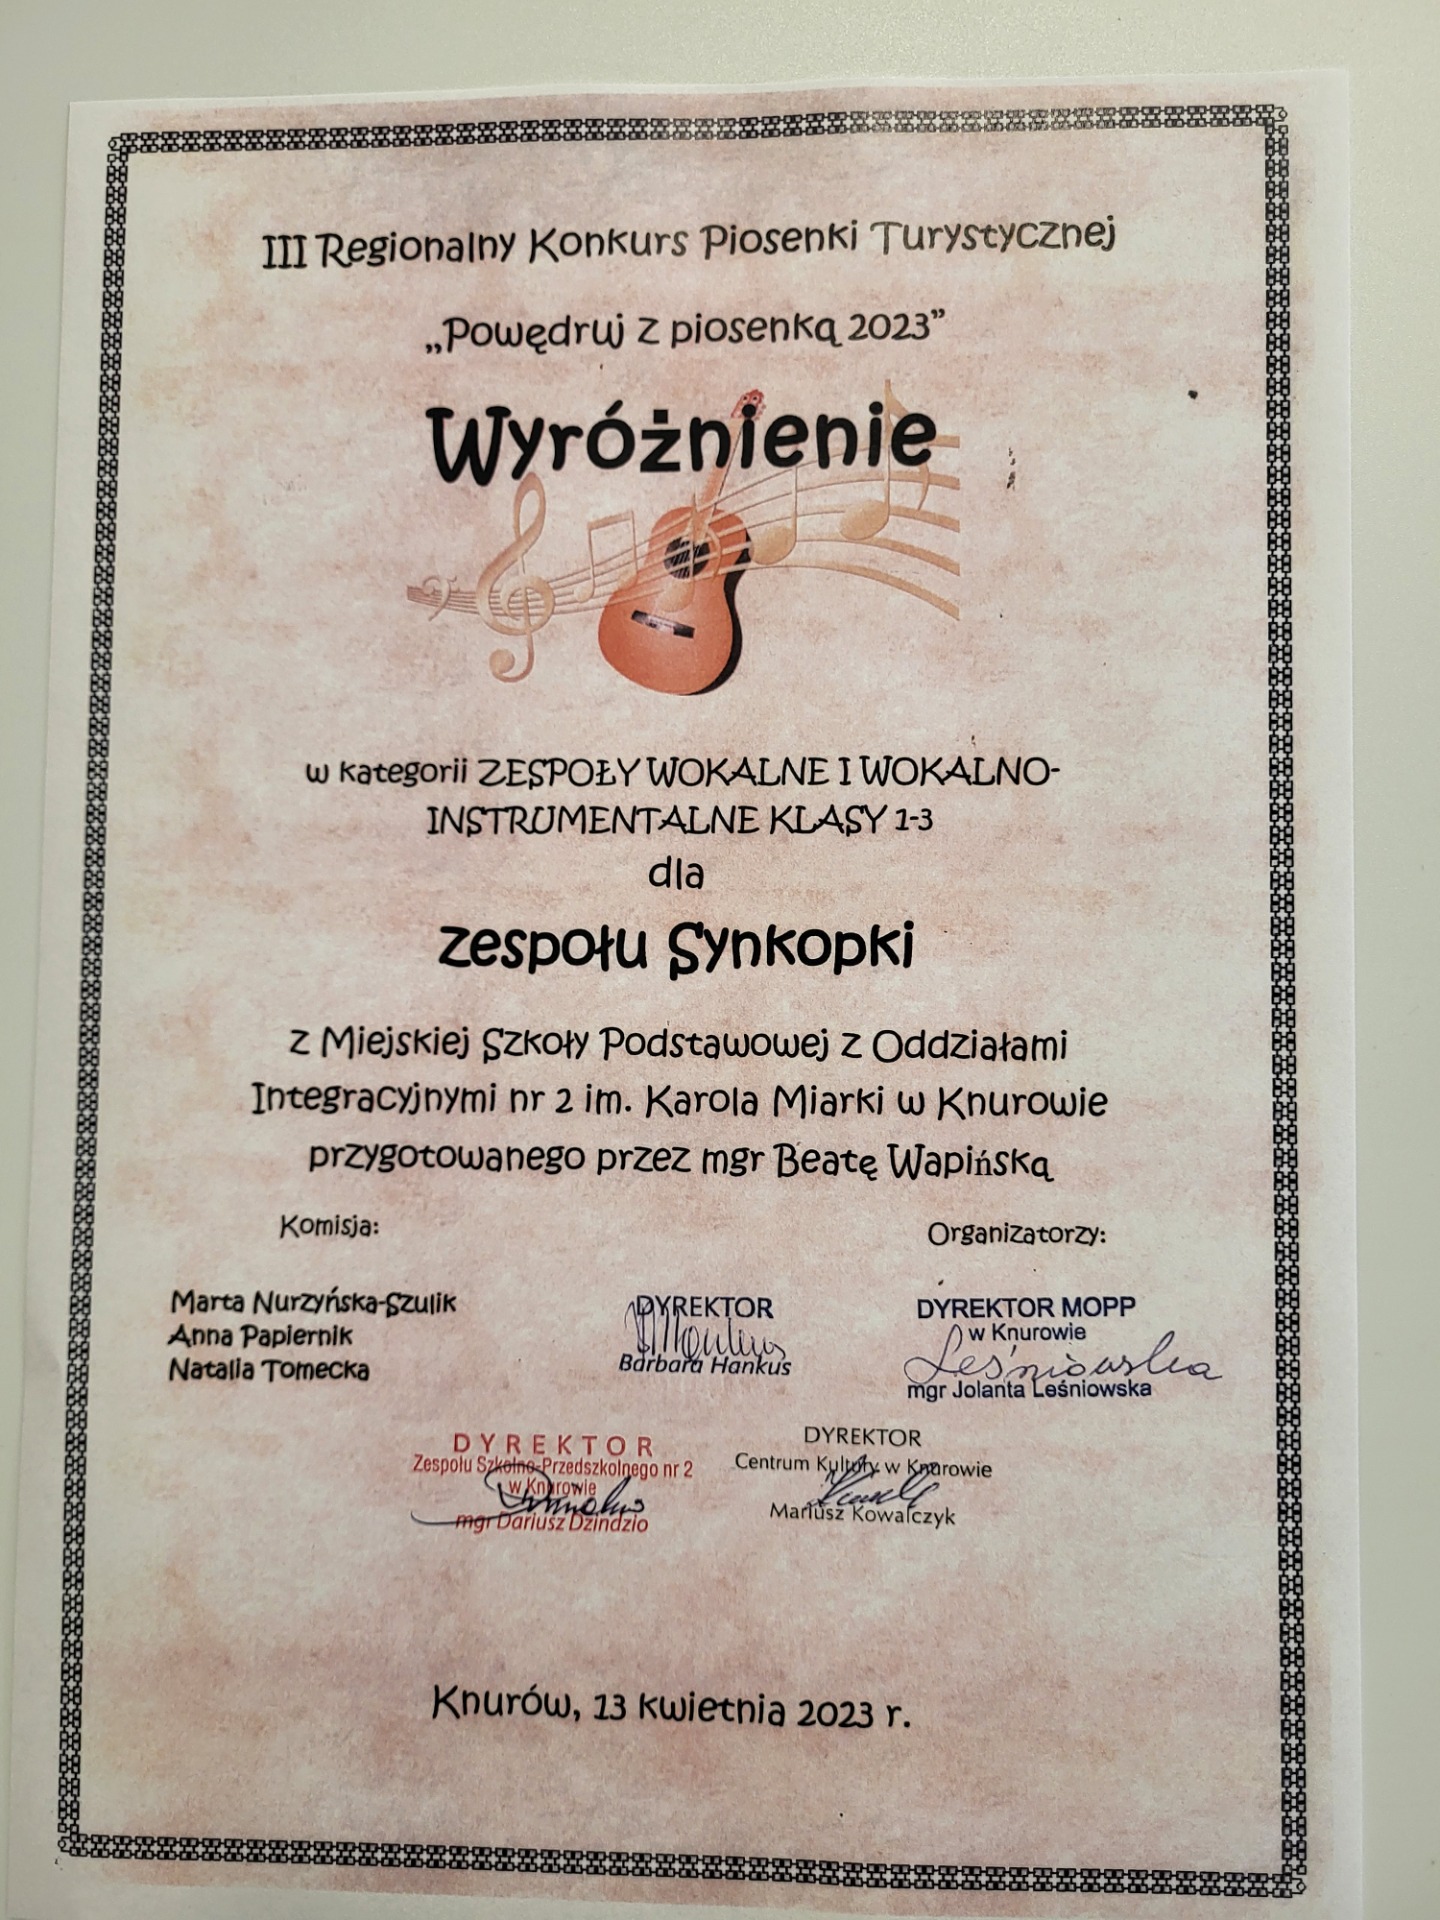 Dyplom - Wyróżnienie dla zespołu wokalno - instrumentalnego "Synkopki" na III Regionalnym Konkursie Piosenki Turystycznej "Powędruj z piosenką 2023"
